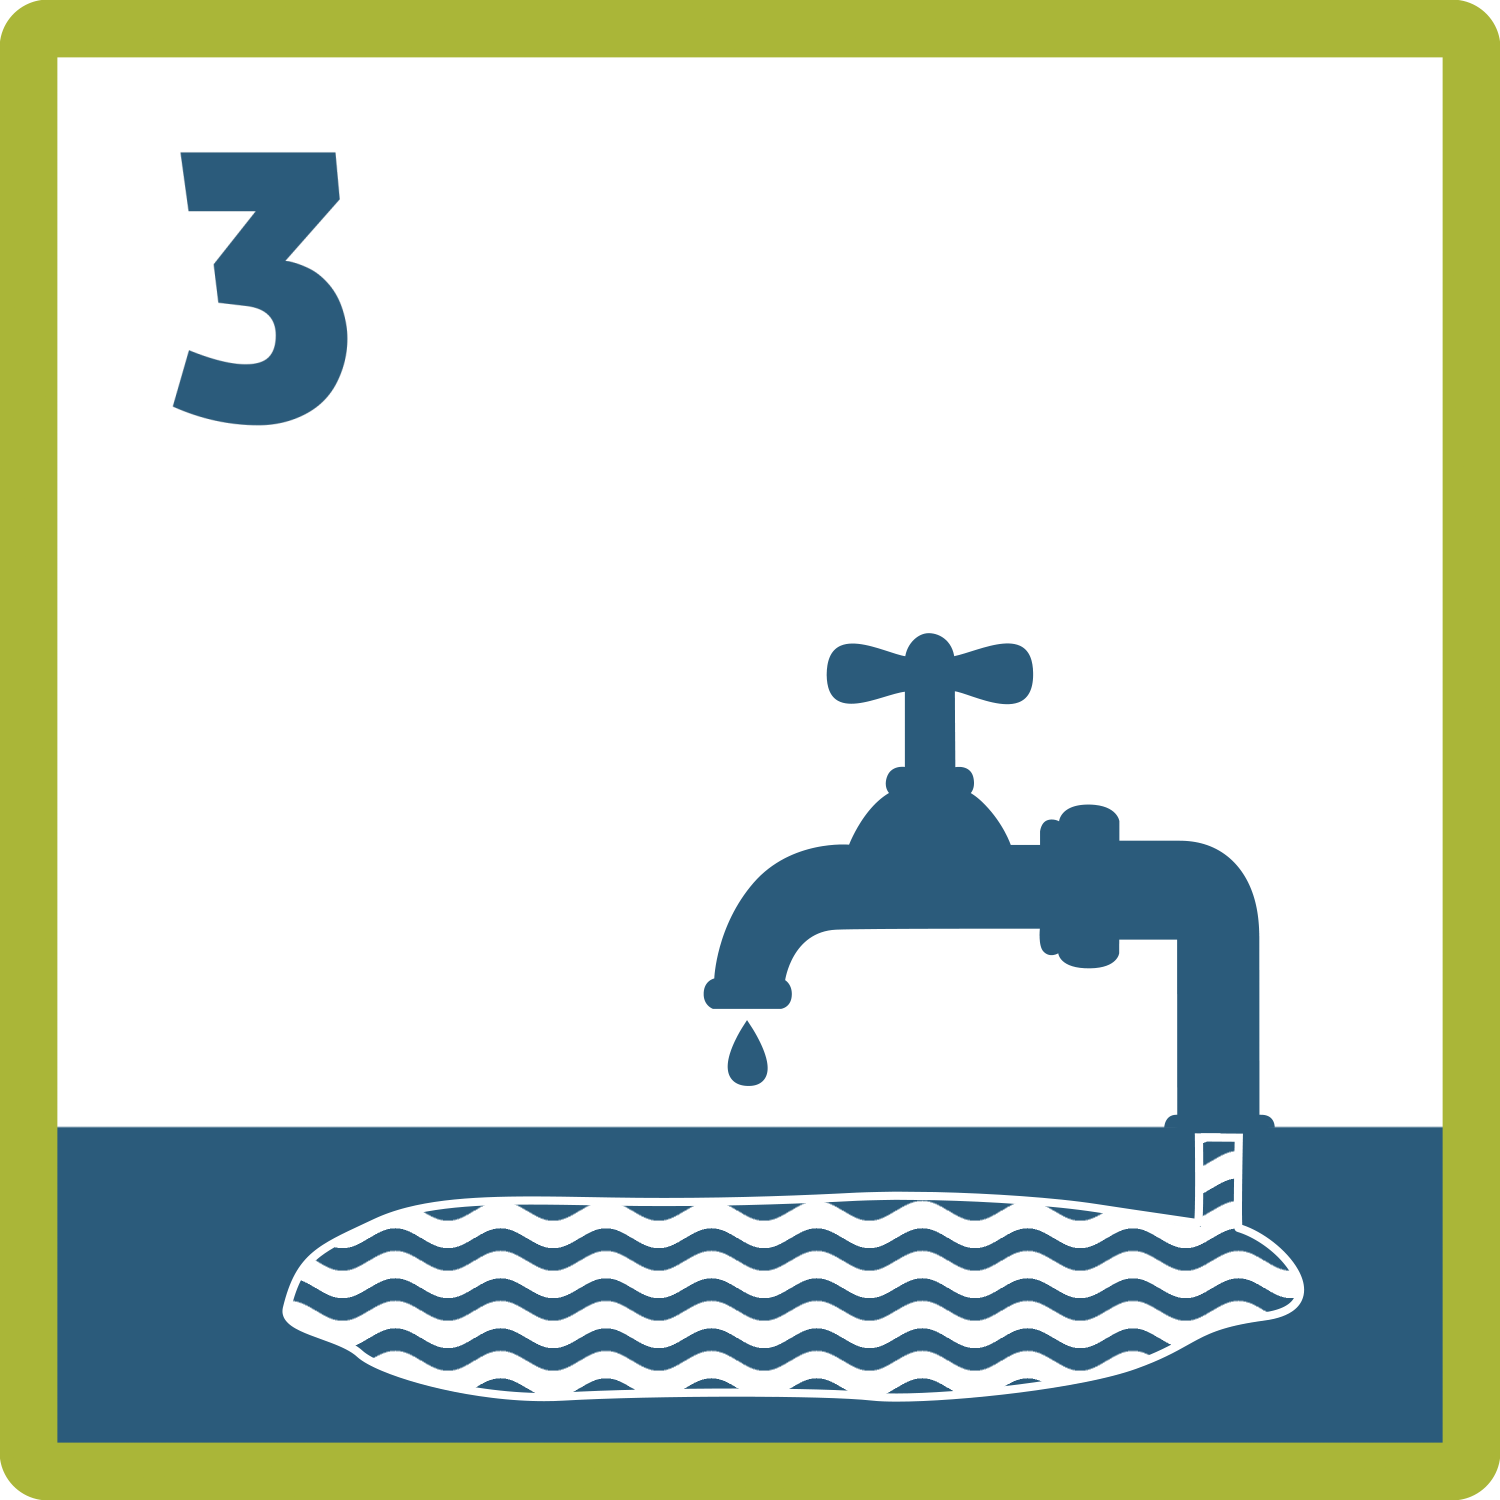 Piktogramm: ein tropfender Wasserhahn, dessen Rohr in ein oberflächennahes Wasservorkommen reicht